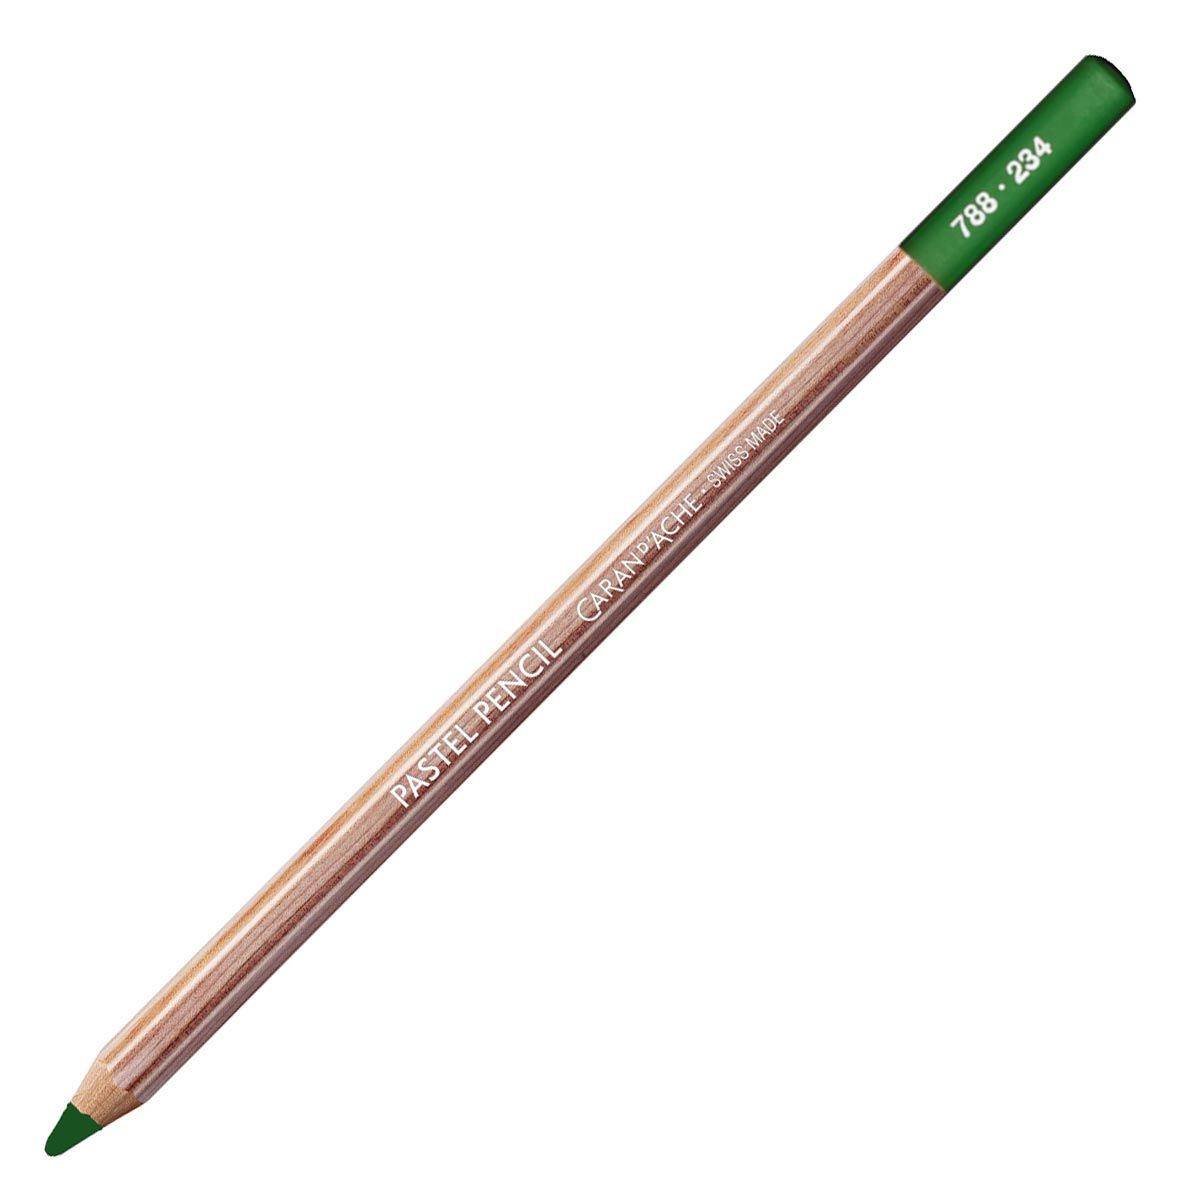 Caran d'Ache Pastel Pencil - Mid Moss Green 30% 234